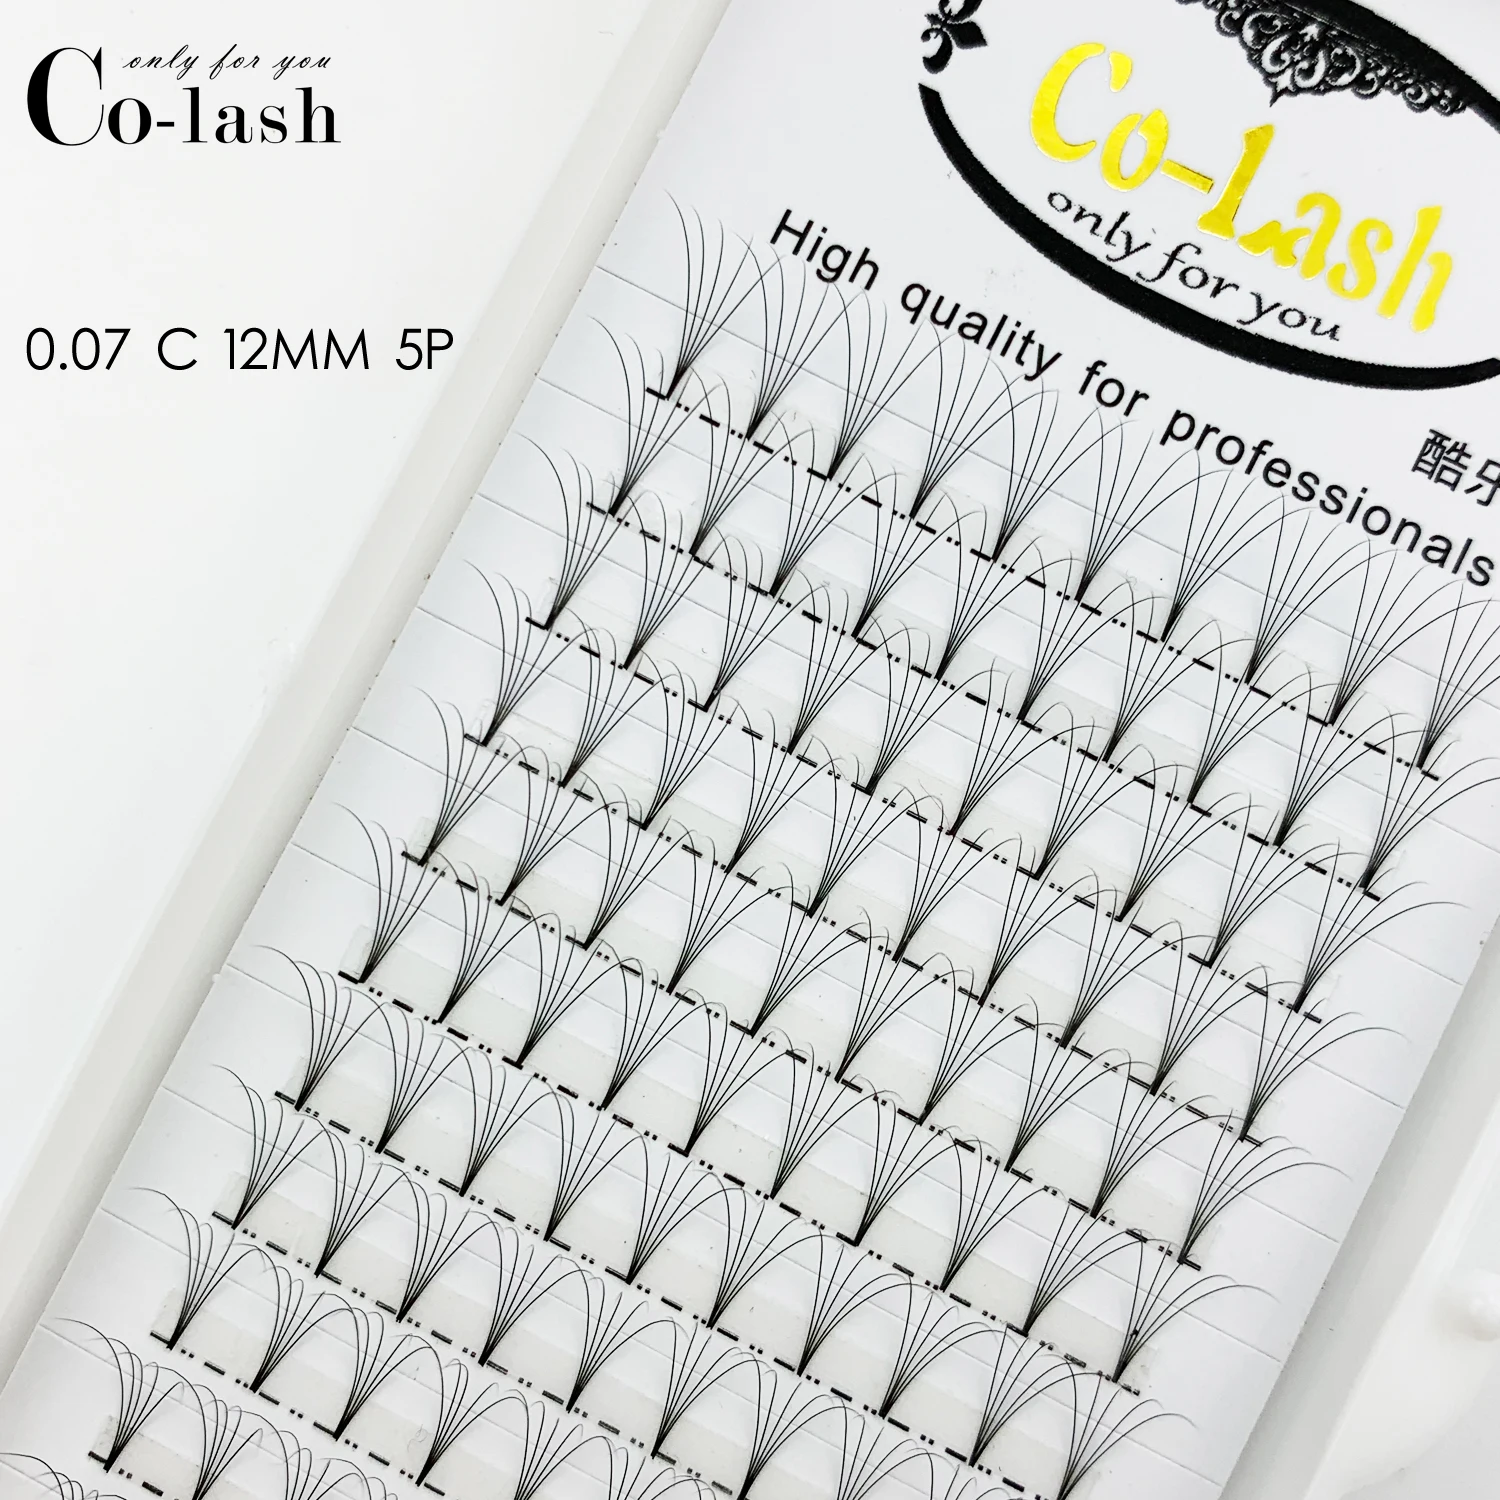 Colash 1 коробка большой емкости русский объем ресниц 3D ресницы для наращивания 0,07 мм толщина C D завитые норковые полосы ресницы Индивидуальные